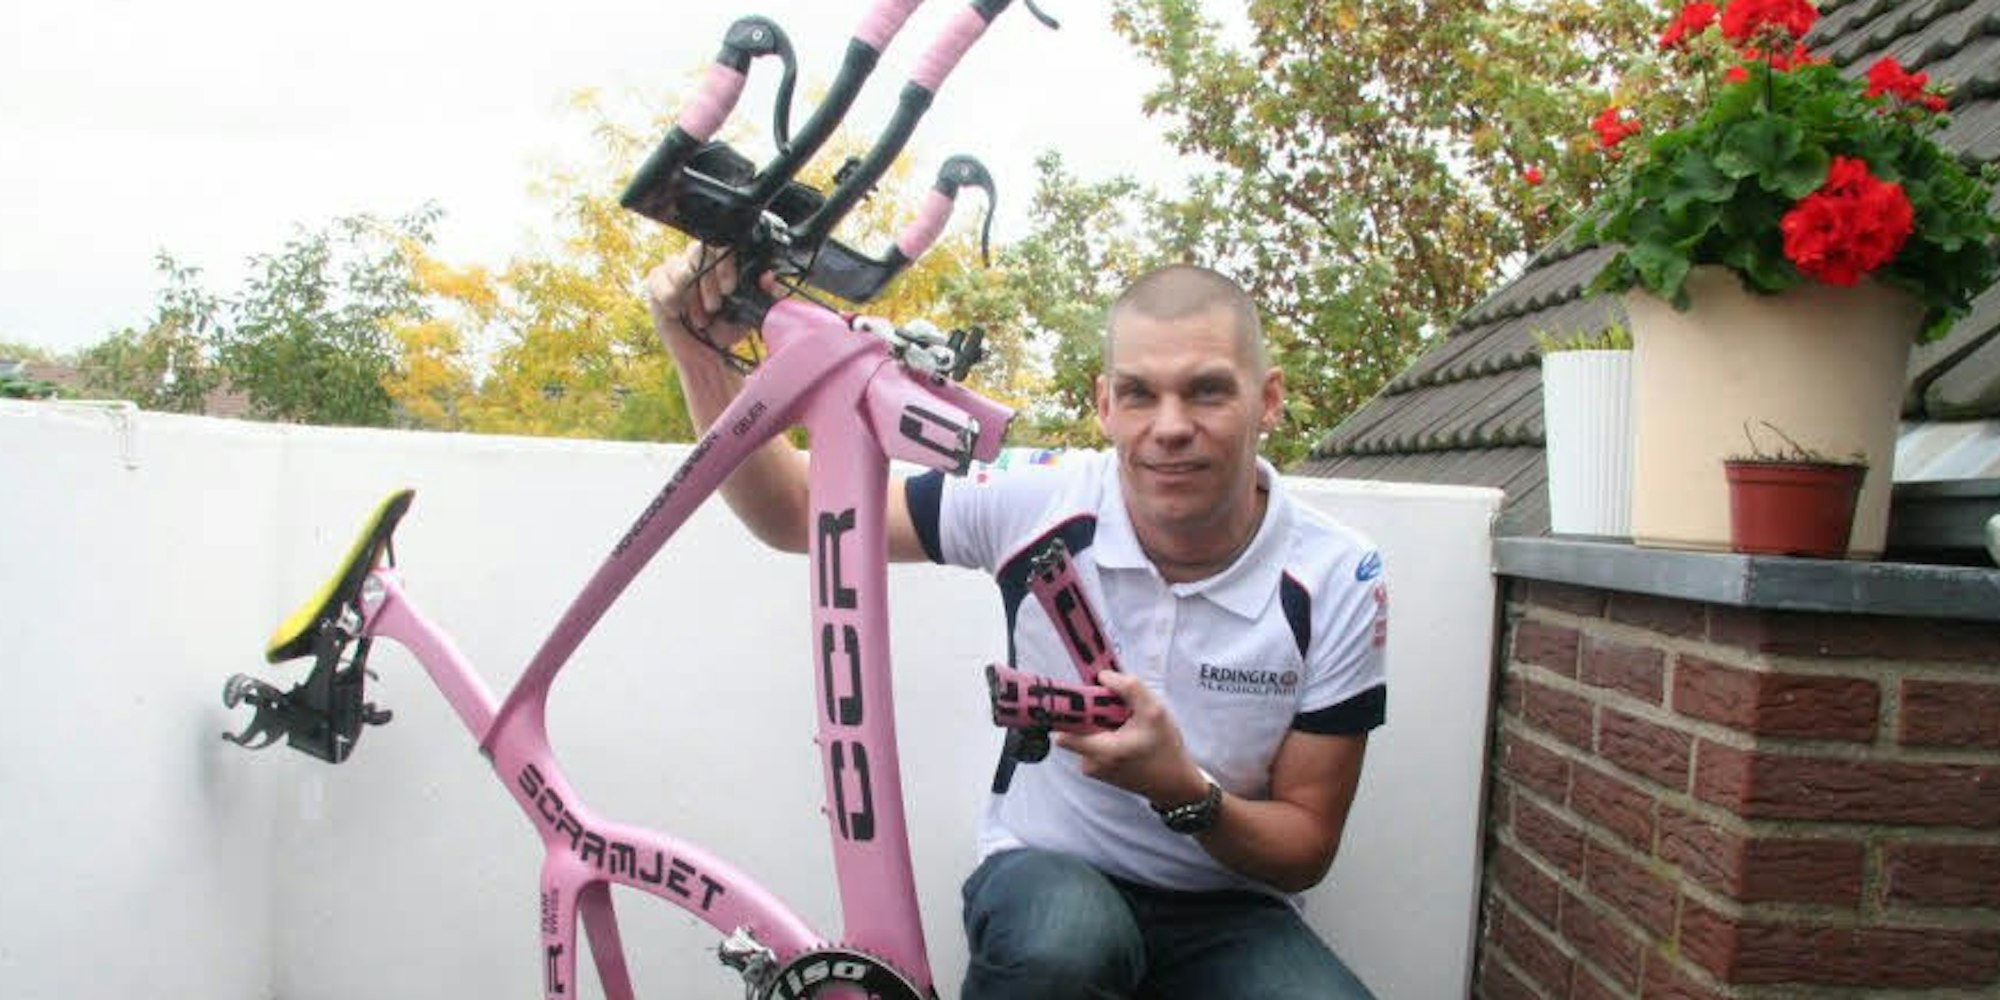 Philippe Geuer ist von einem Autofahrer auf seinem Fahrrad übersehen und angefahren worden. Seit dem Unfall kann der Flugbegleiter nicht mehr arbeiten und nur eingeschränkt trainieren.